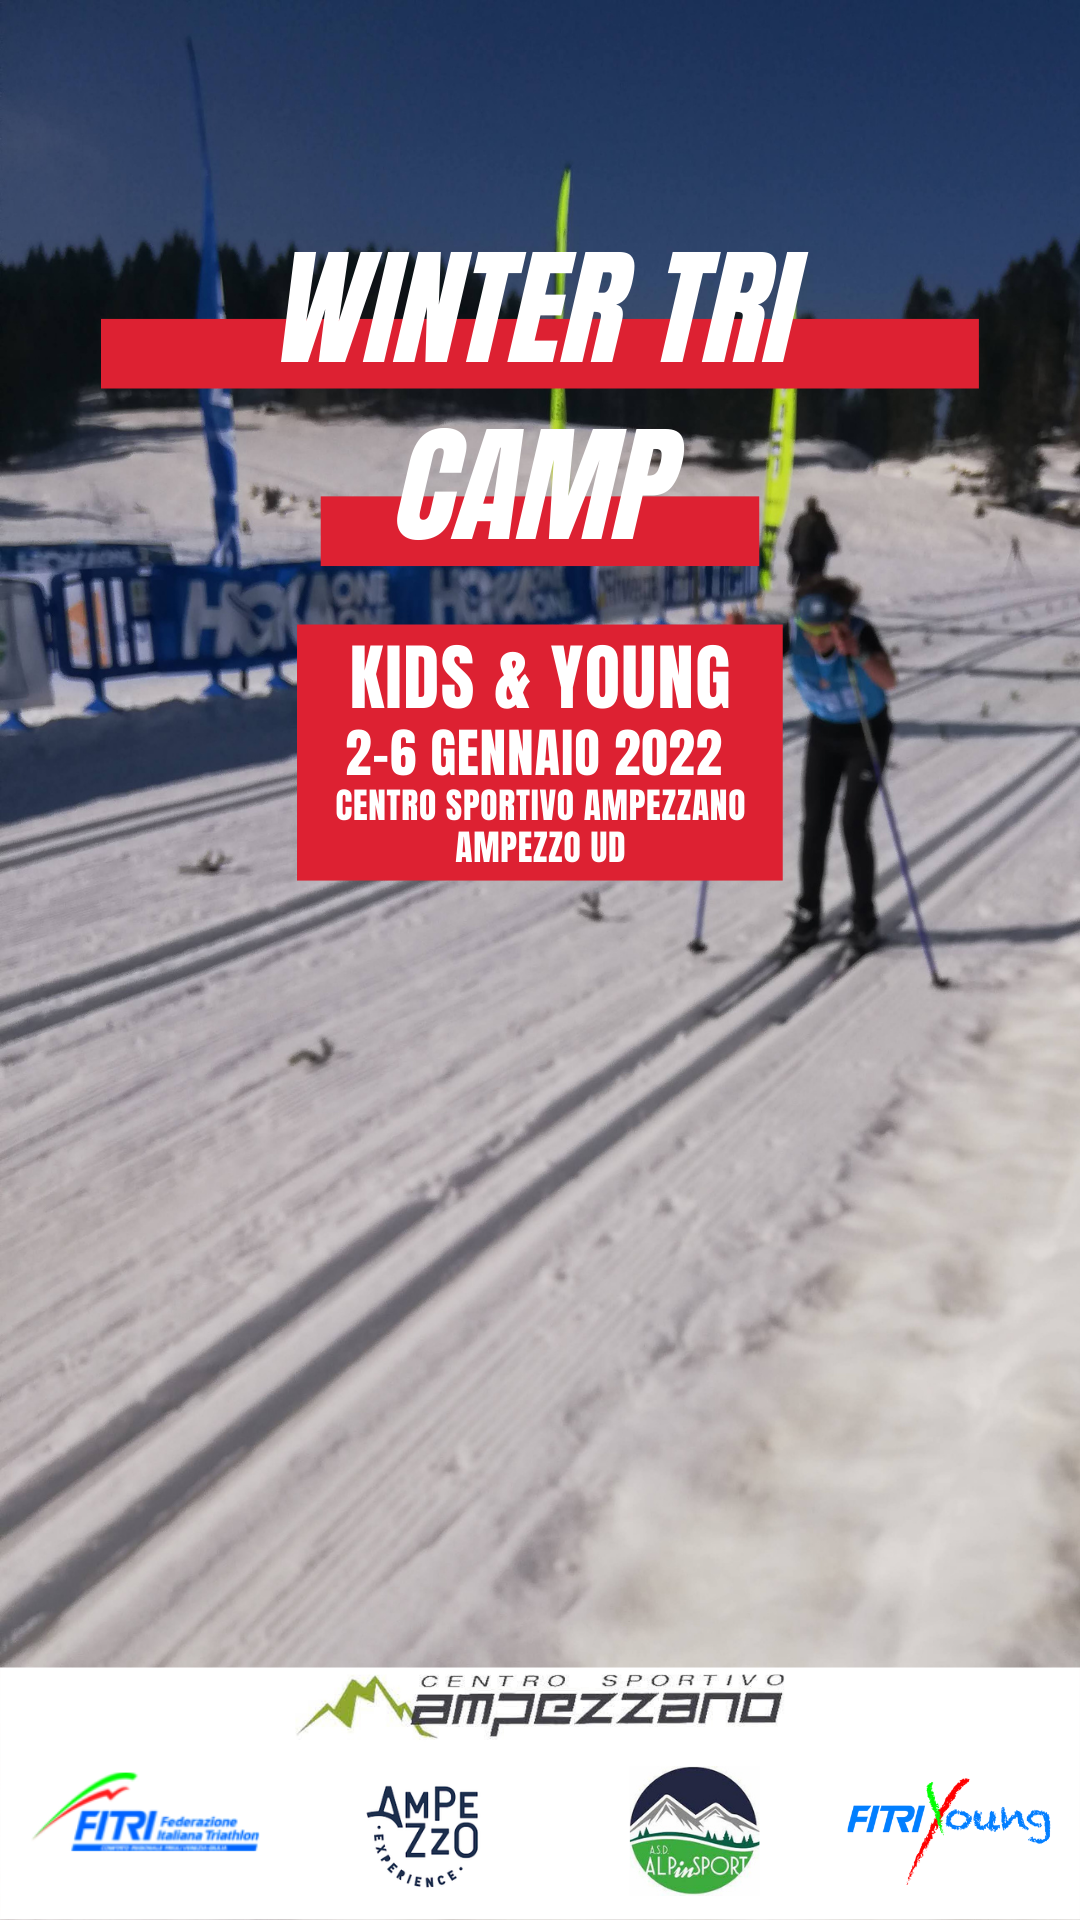 Winter TRI Camp 2022